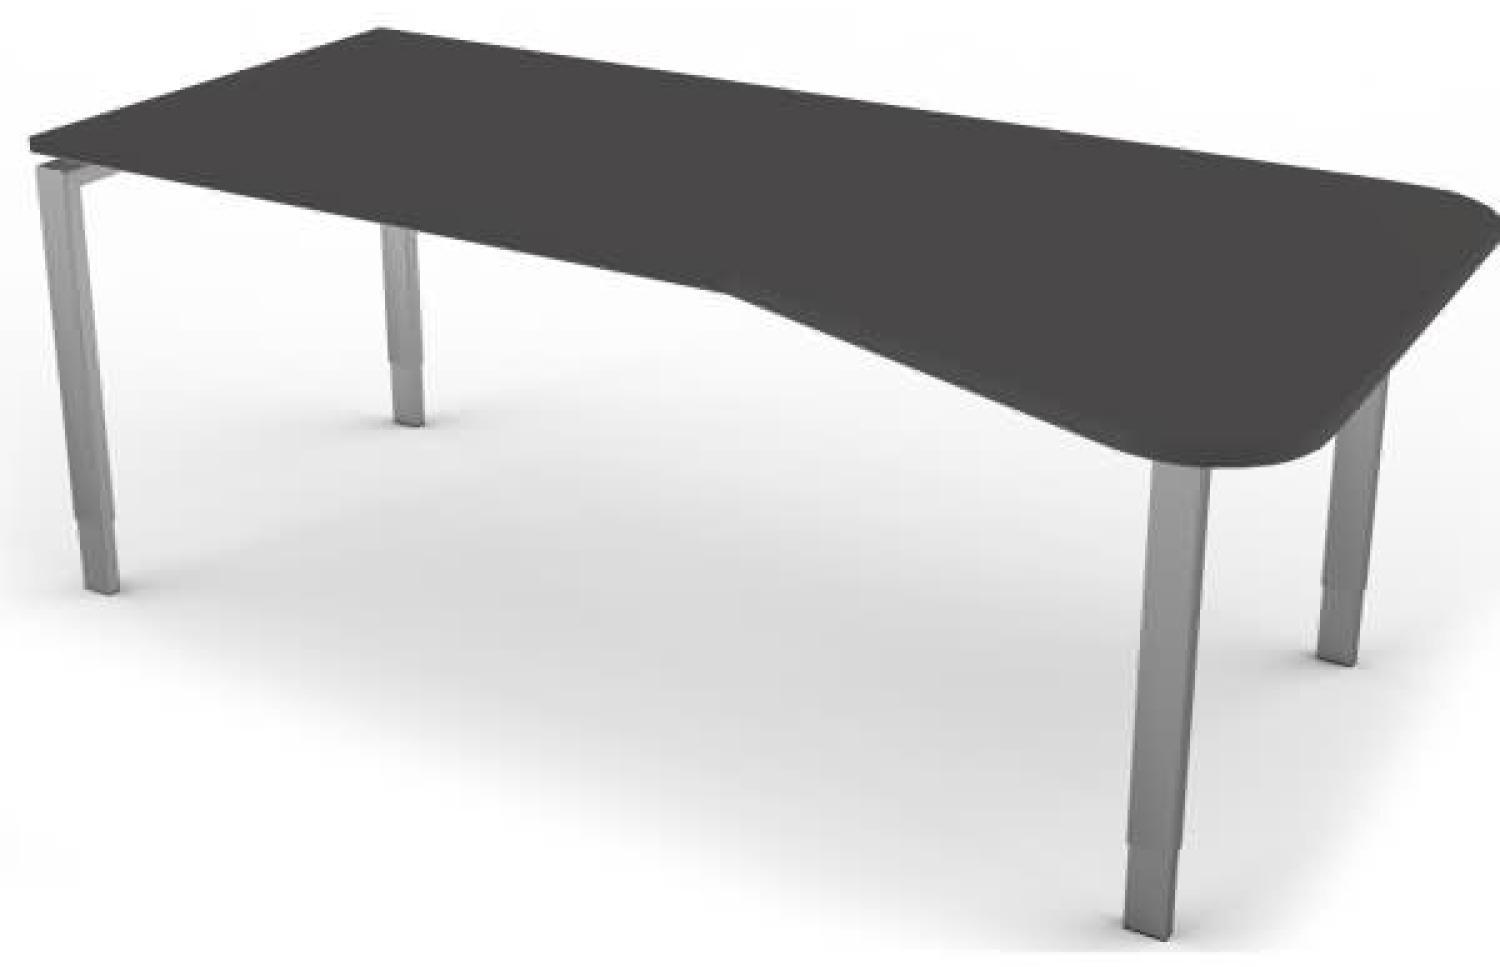 Freiformtisch mit 4-Bein-Gestell, 195x80 / 100cm, Anthrazit / Silber Bild 1